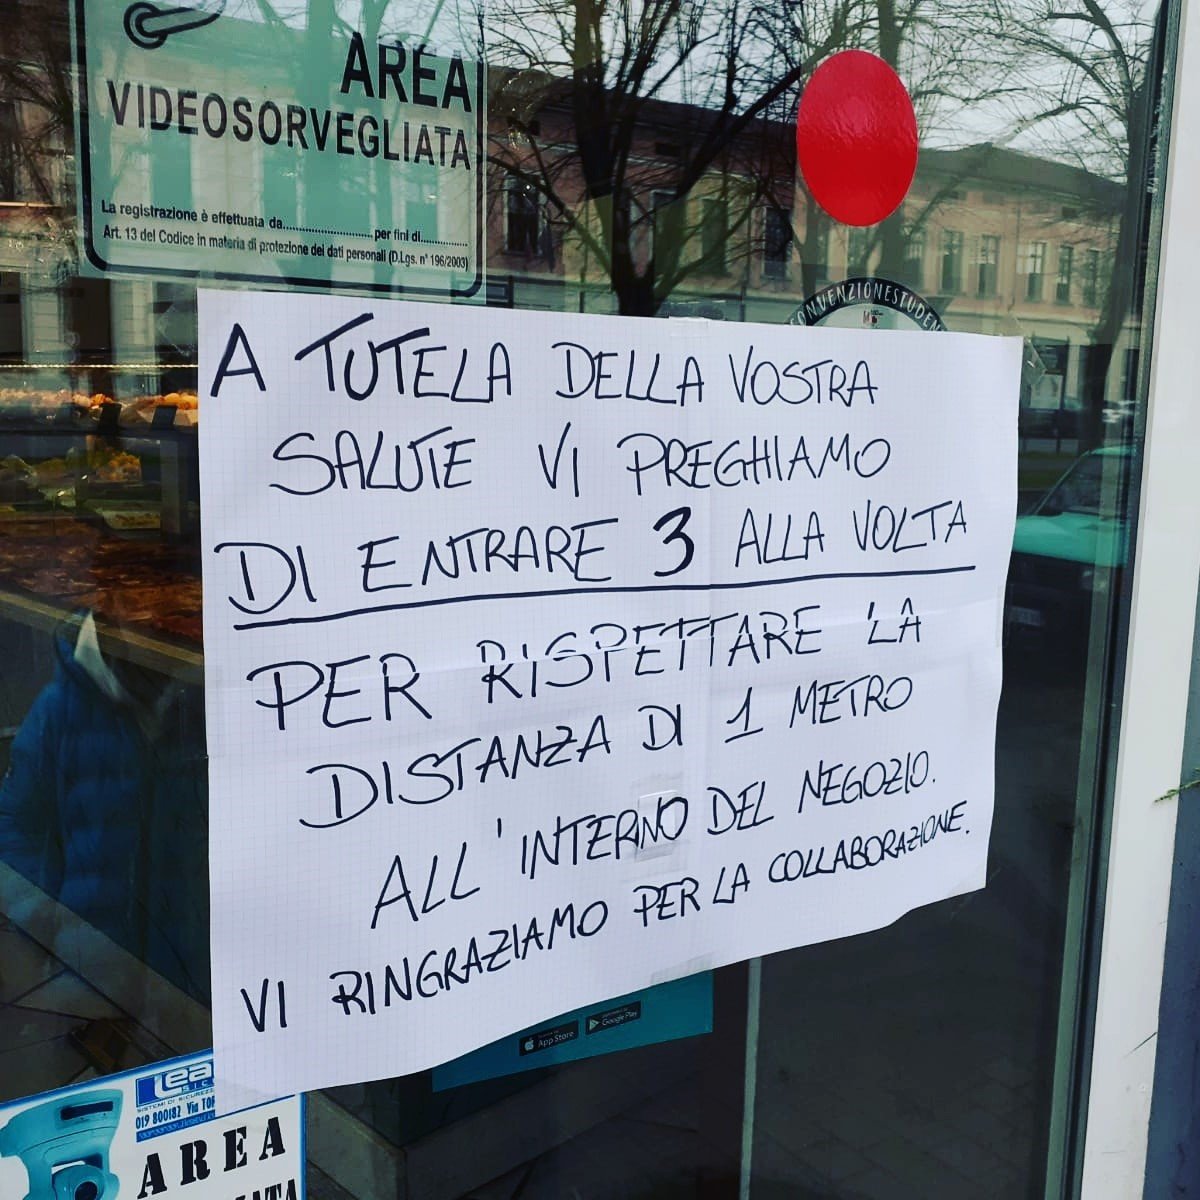 Piemonte verso il lockdown, la Regione: “Serve il tempo per riorganizzarsi”